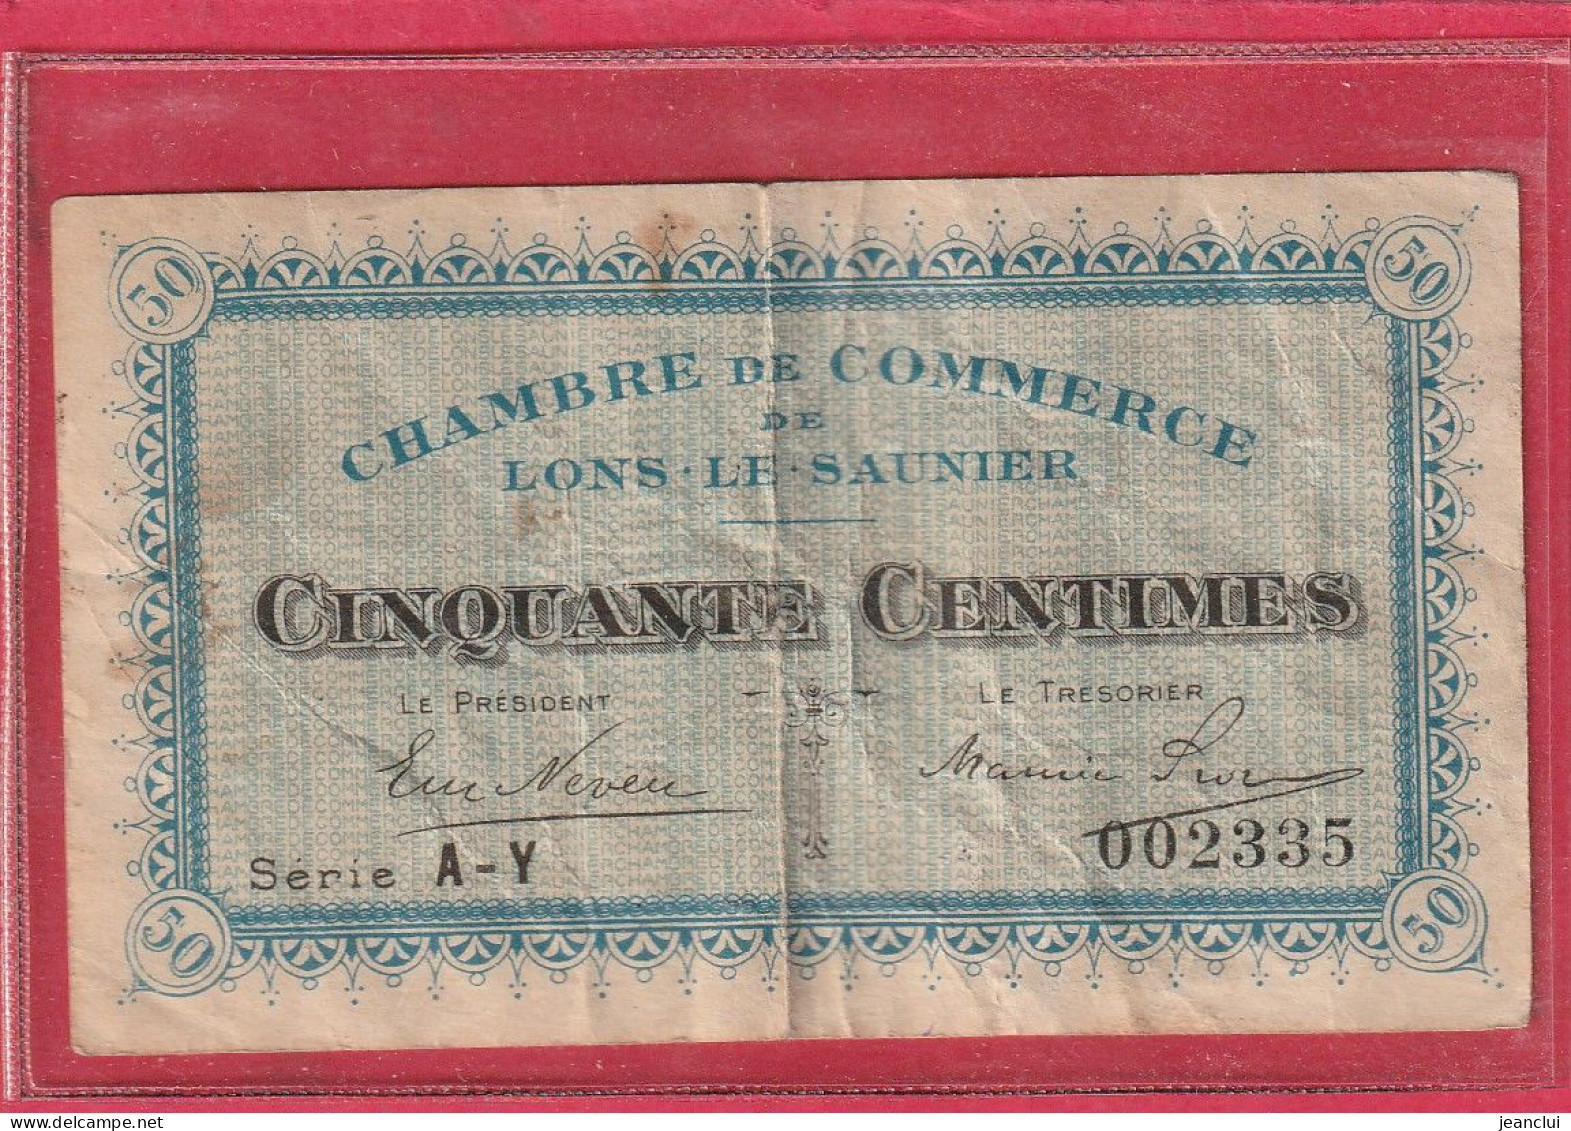 CHAMBRE DE COMMERCE DE LONS-LE-SAUNIER . 50 Centimes   . SERIE  A-Y  .  N° 002335  .  2 SCANNES  .  BILLET USITE - Cámara De Comercio